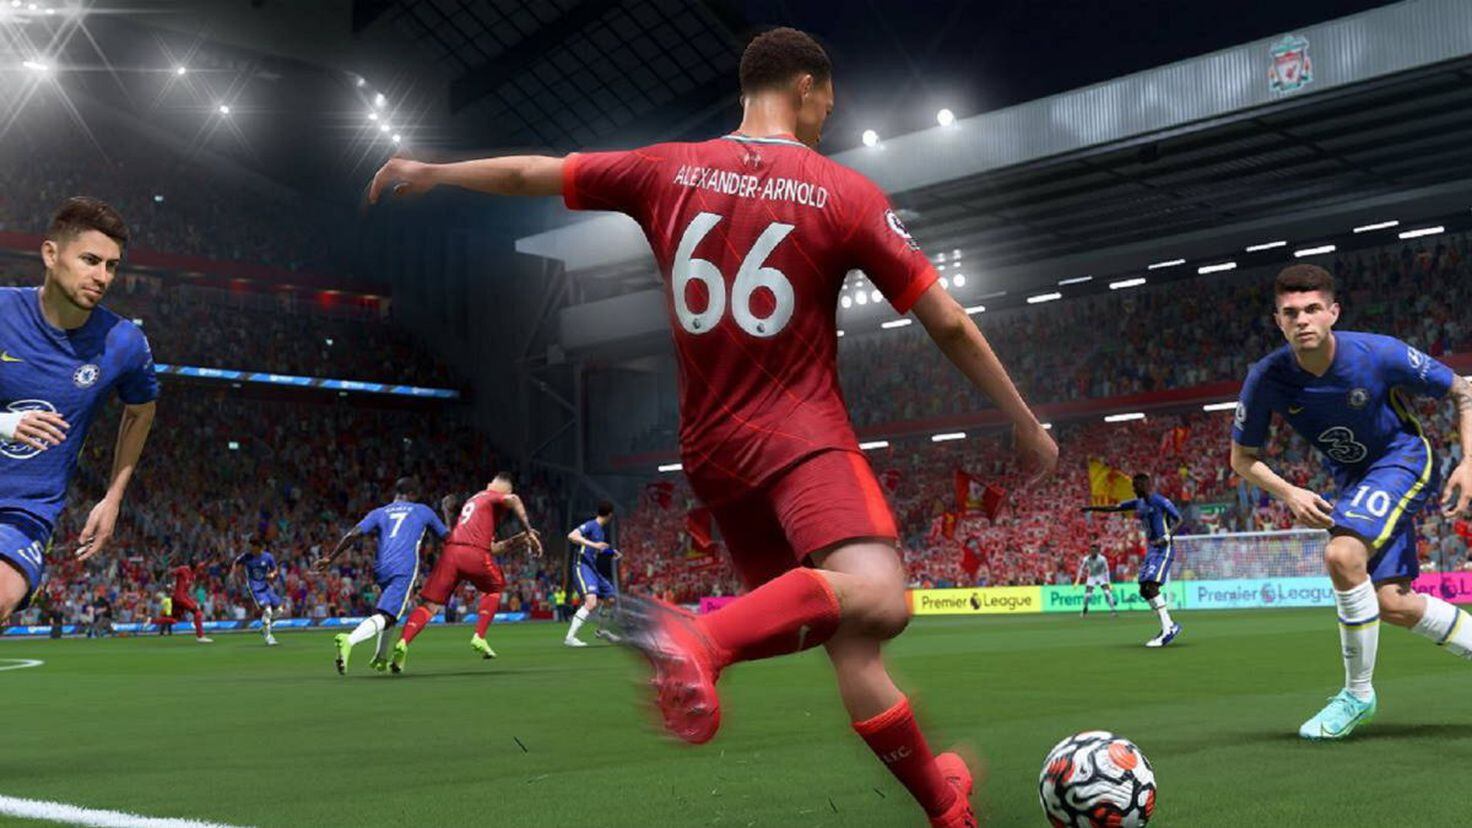 FIFA 22 en PC tendrá un Límite de 1 Activación por Equipo según